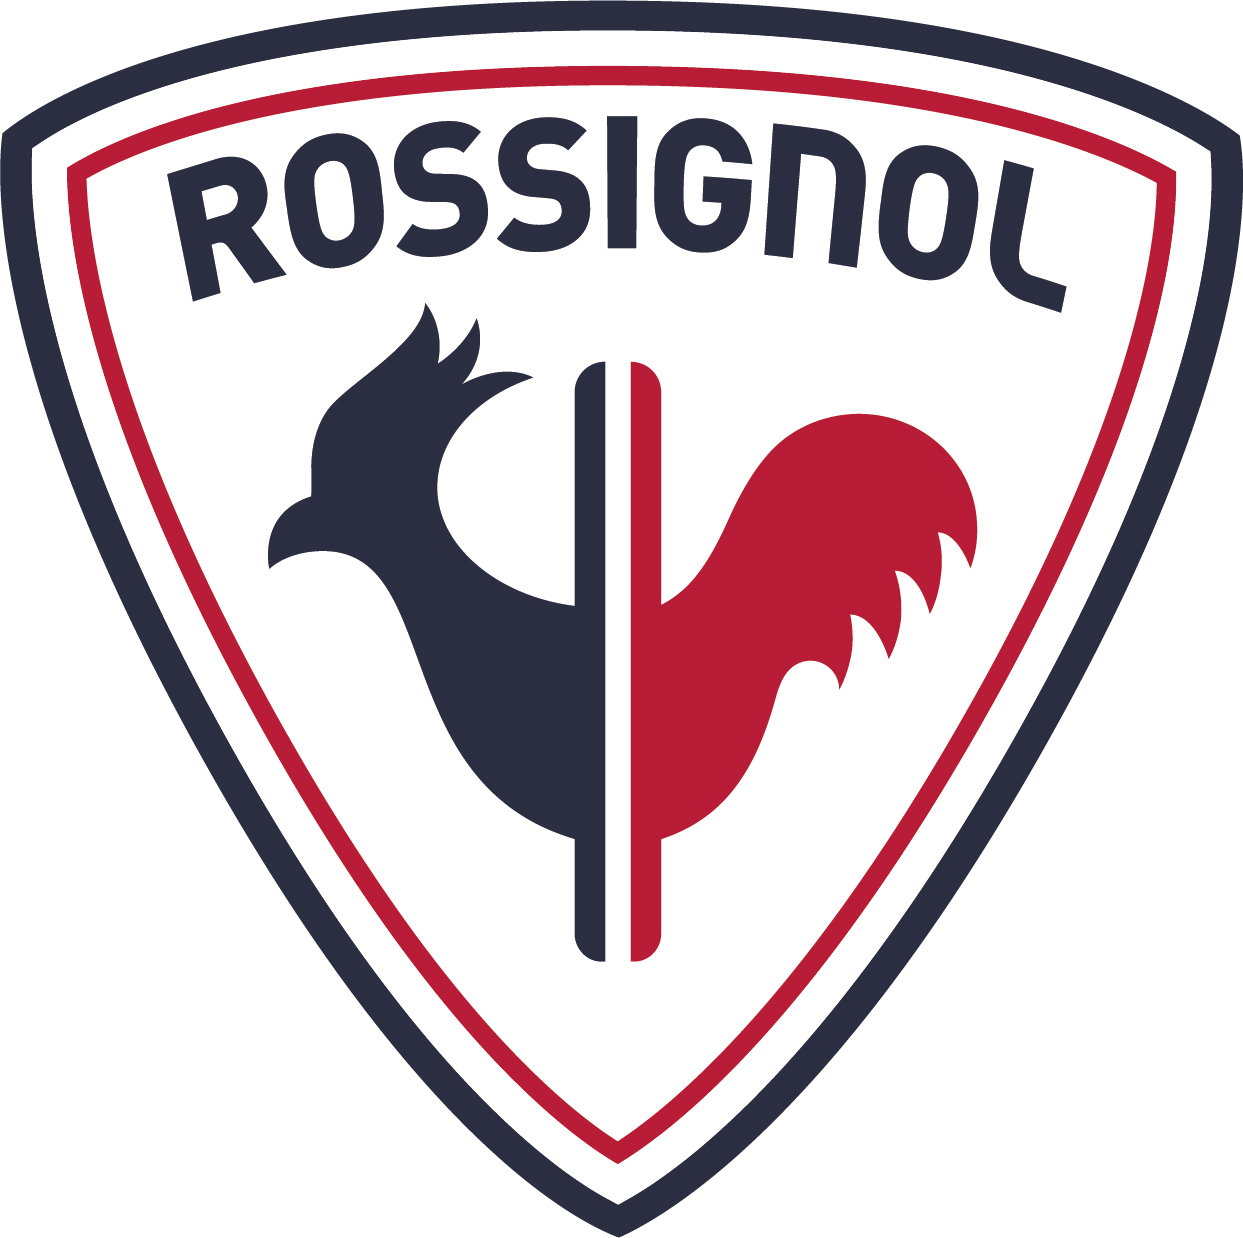 Rossignol_2020_001